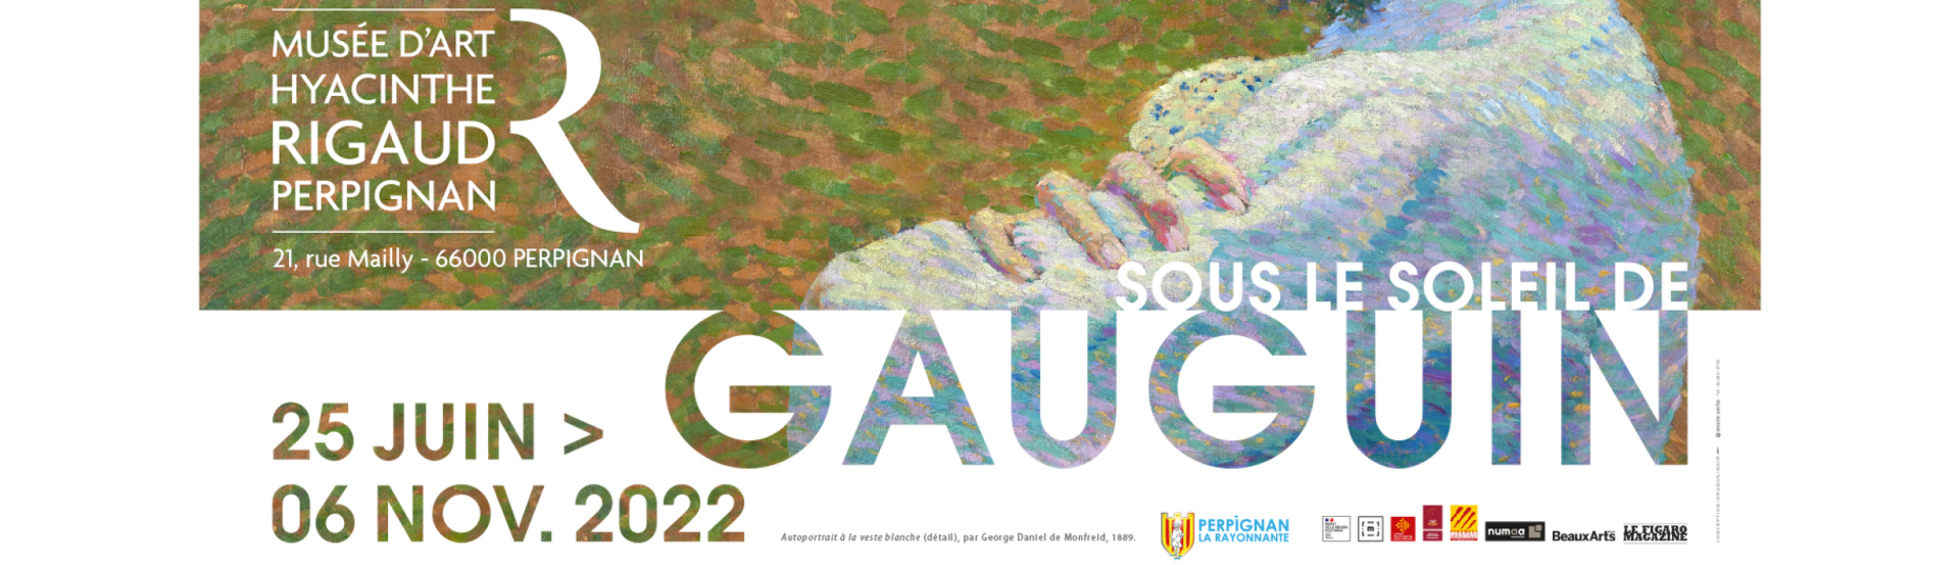 Monfreid sous le soleil de Gauguin - Musée d'Art Hyacinthe Rigaud